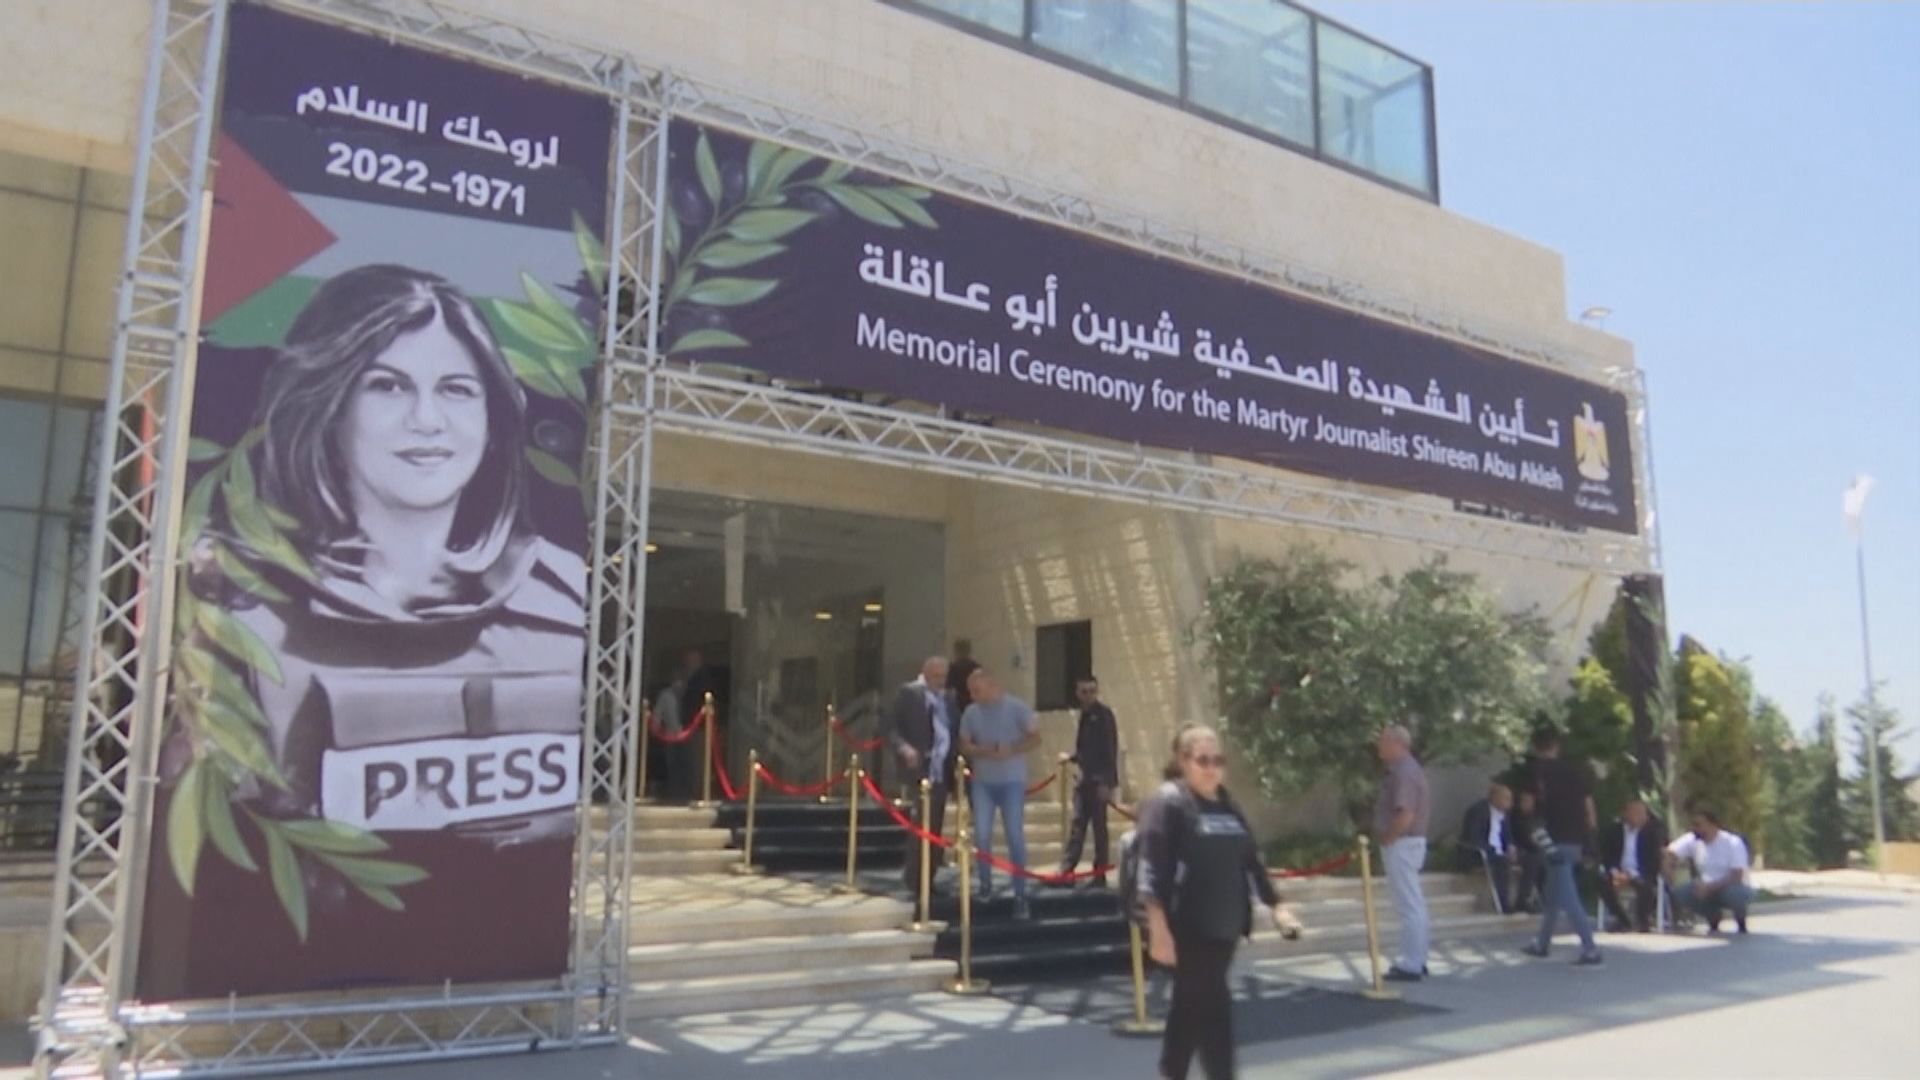 巴勒斯坦稱已將擊斃半島電視台女記者彈頭交予美國調查死因